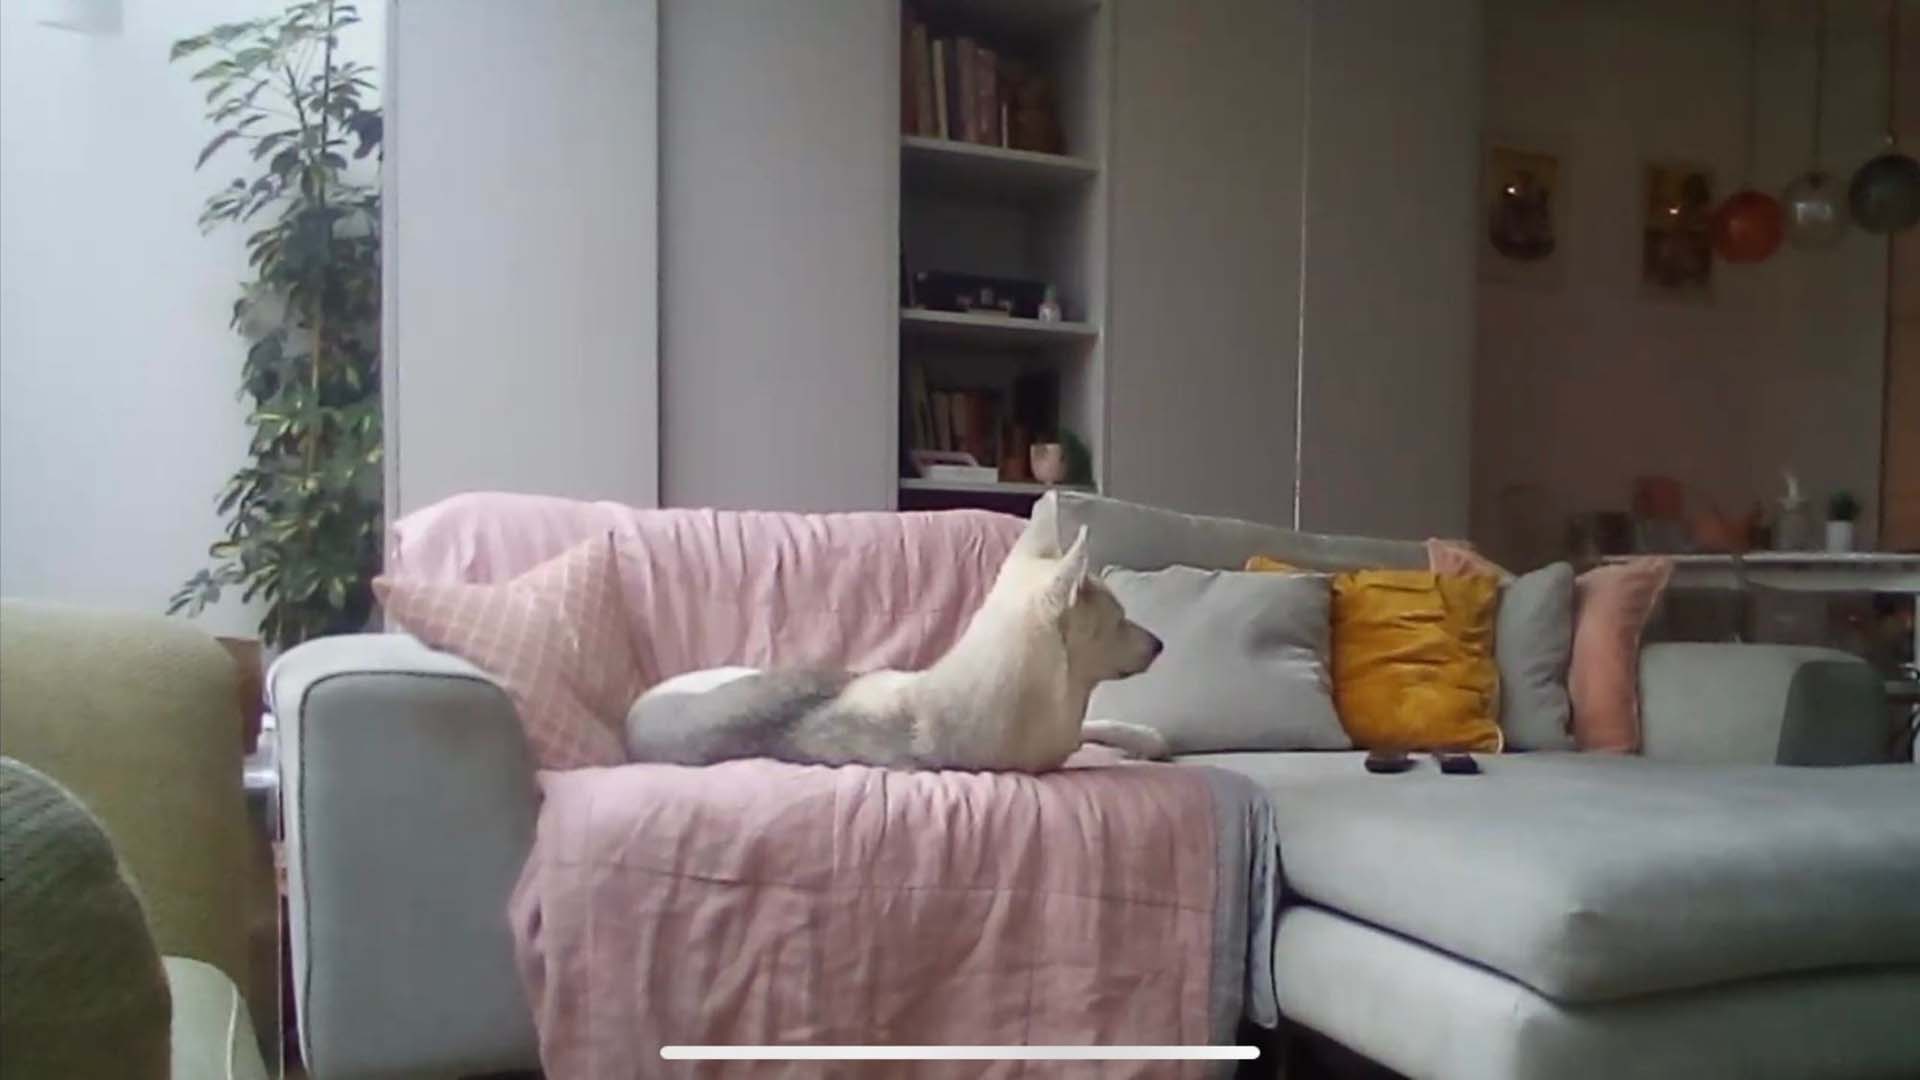 A white dog lying on a sofa